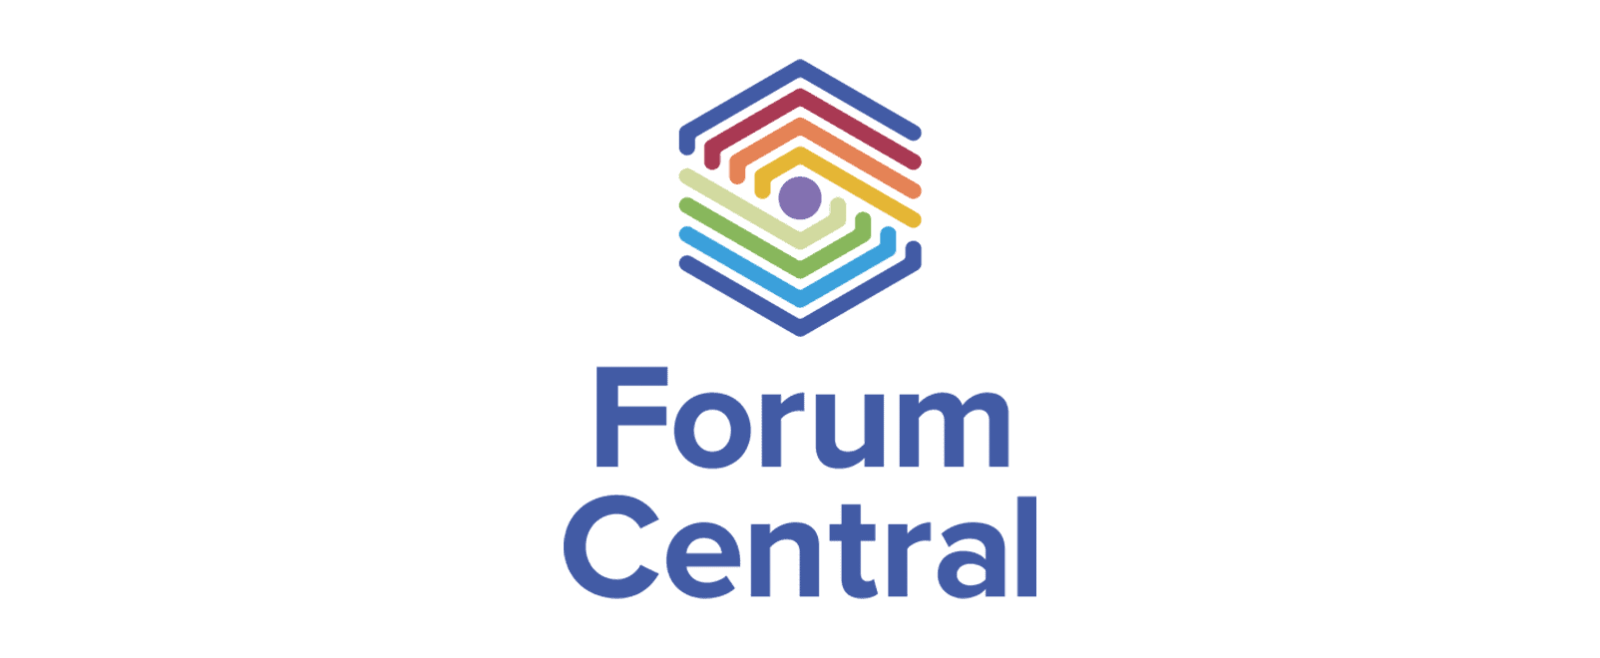 Forum Central Logo 2021 Colour